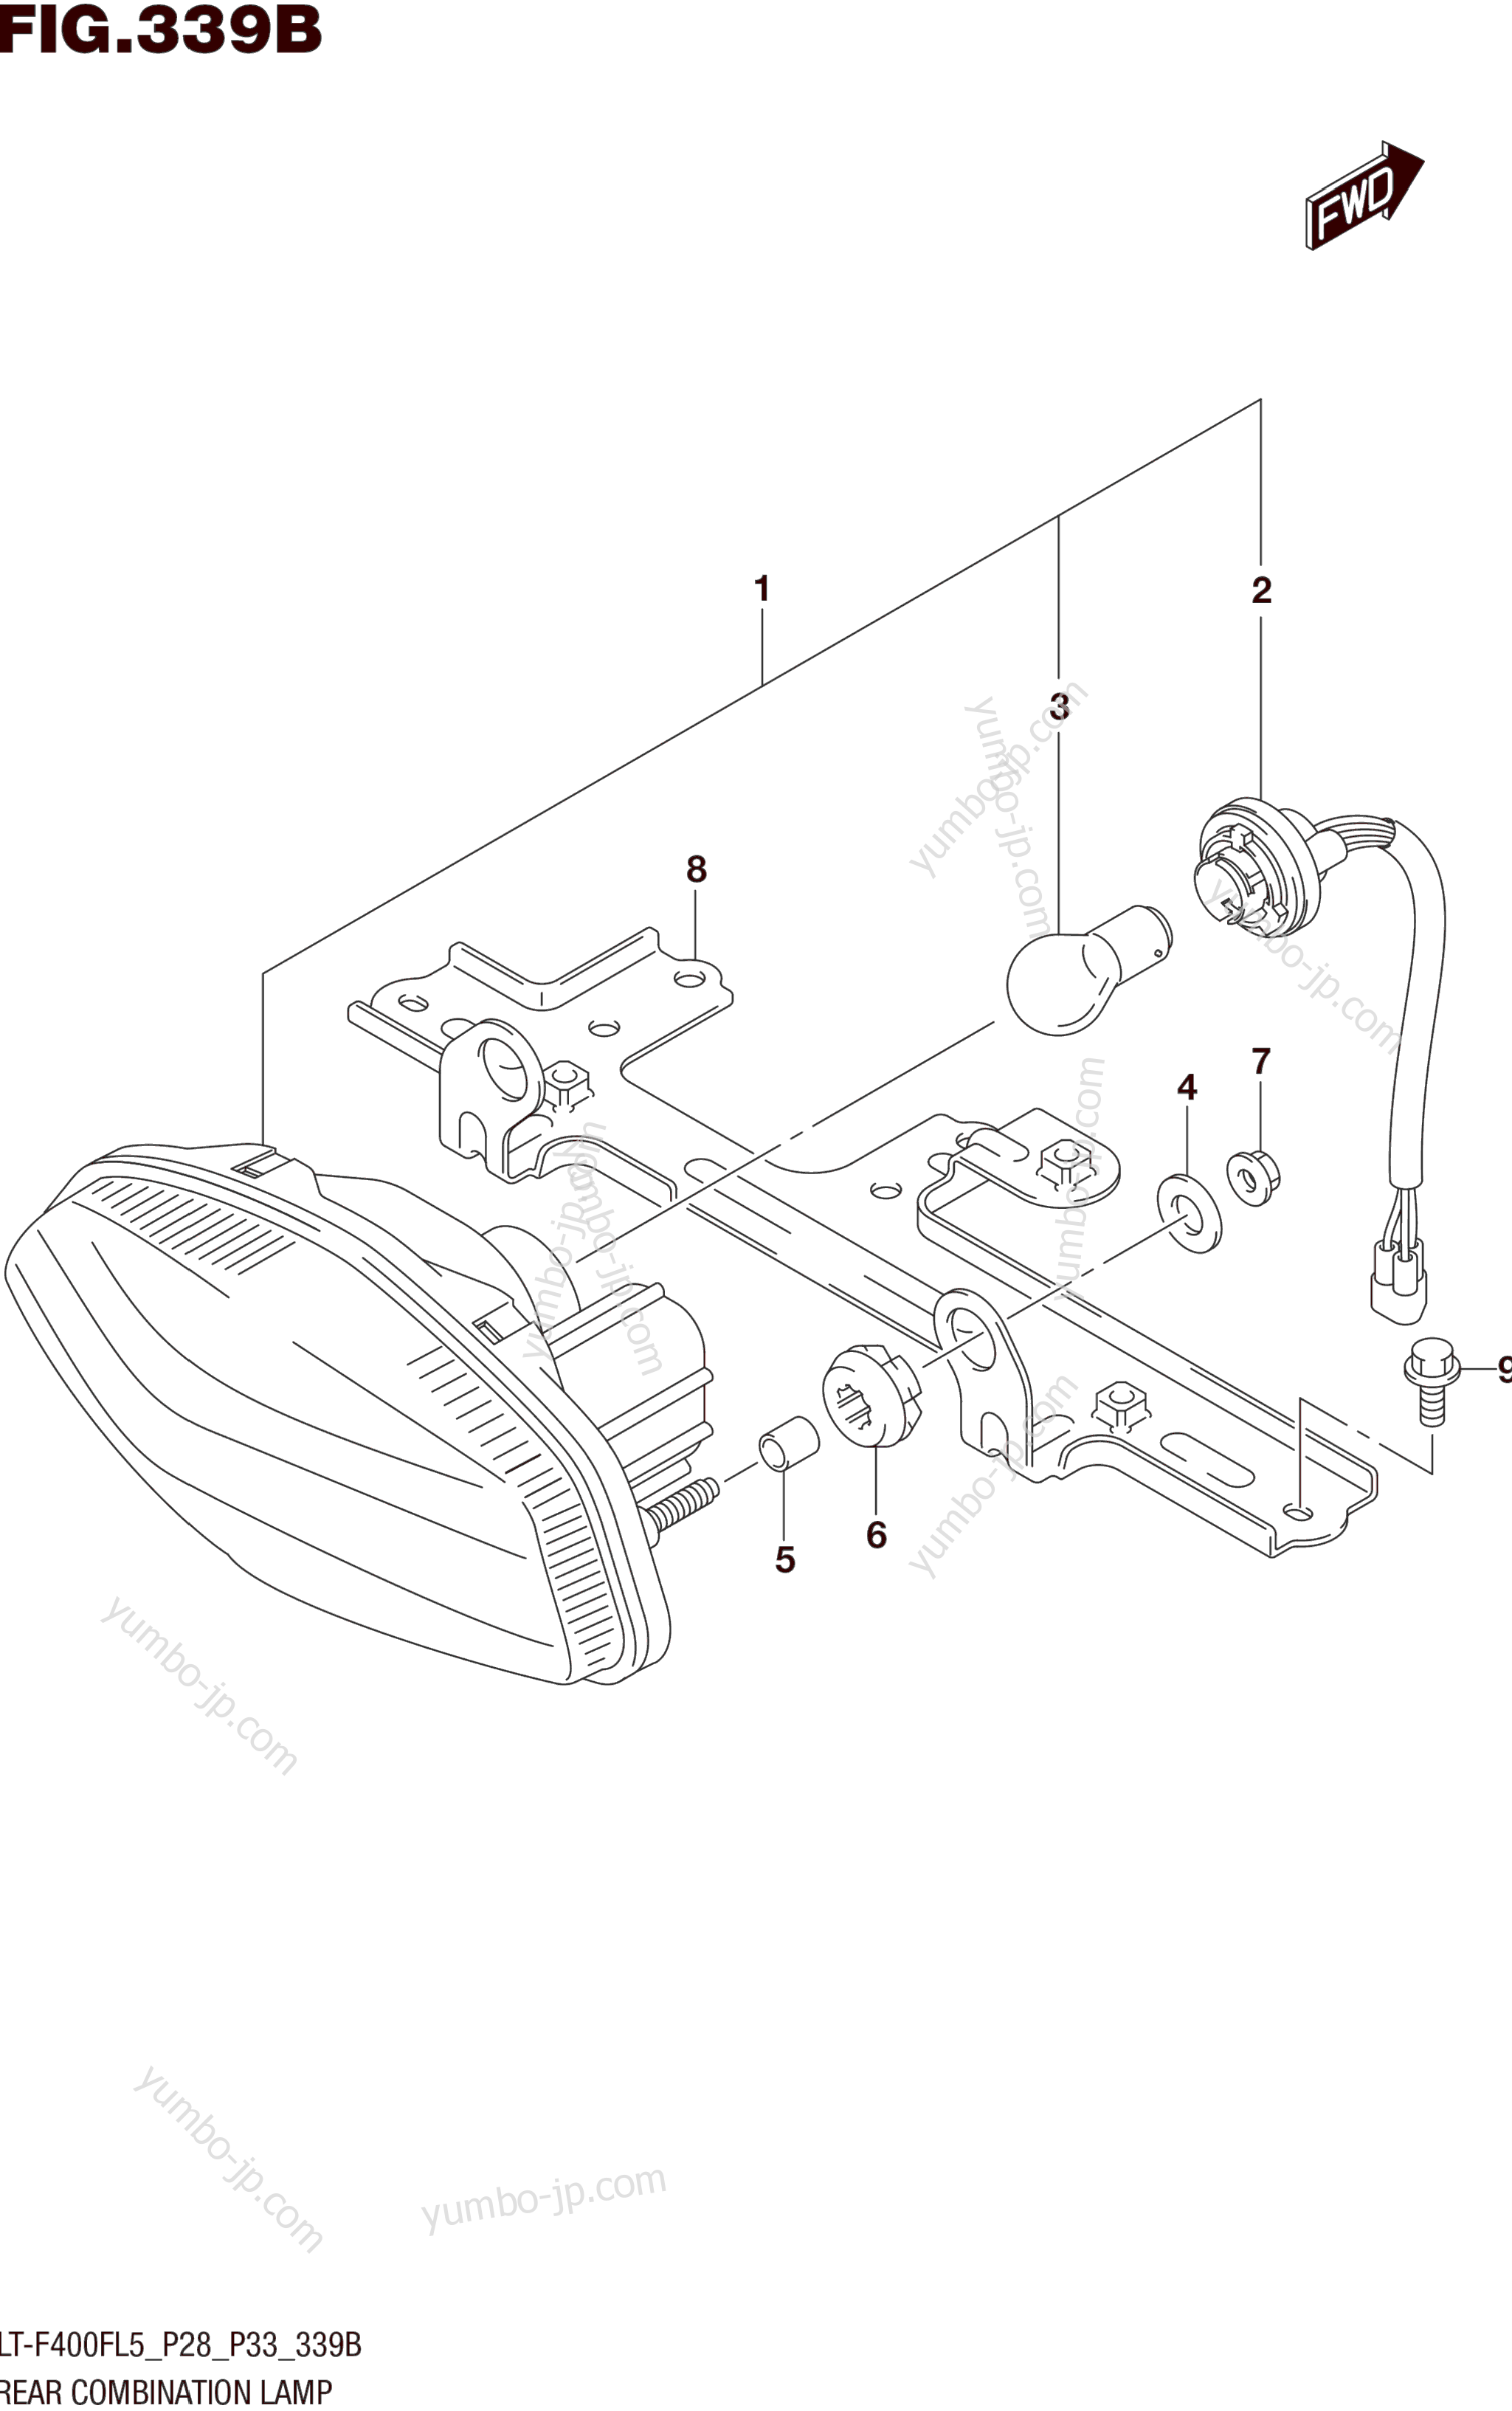 REAR COMBINATION LAMP (LT-F400FL5 P33) для квадроциклов SUZUKI LT-F400F 2015 г.